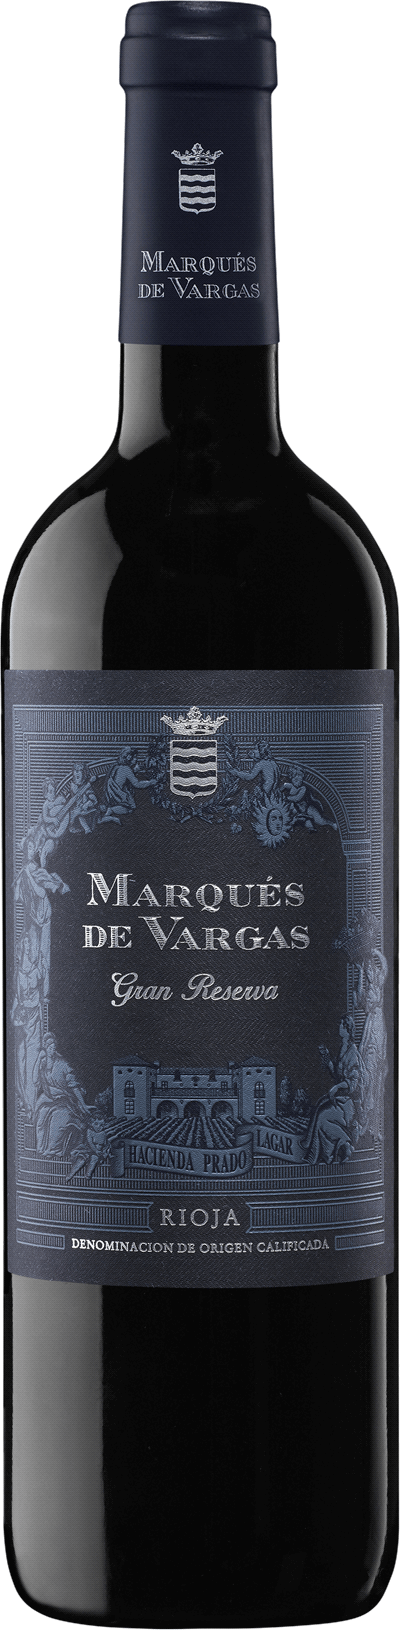 Marqués de Vargas Gran Reserva, 2012